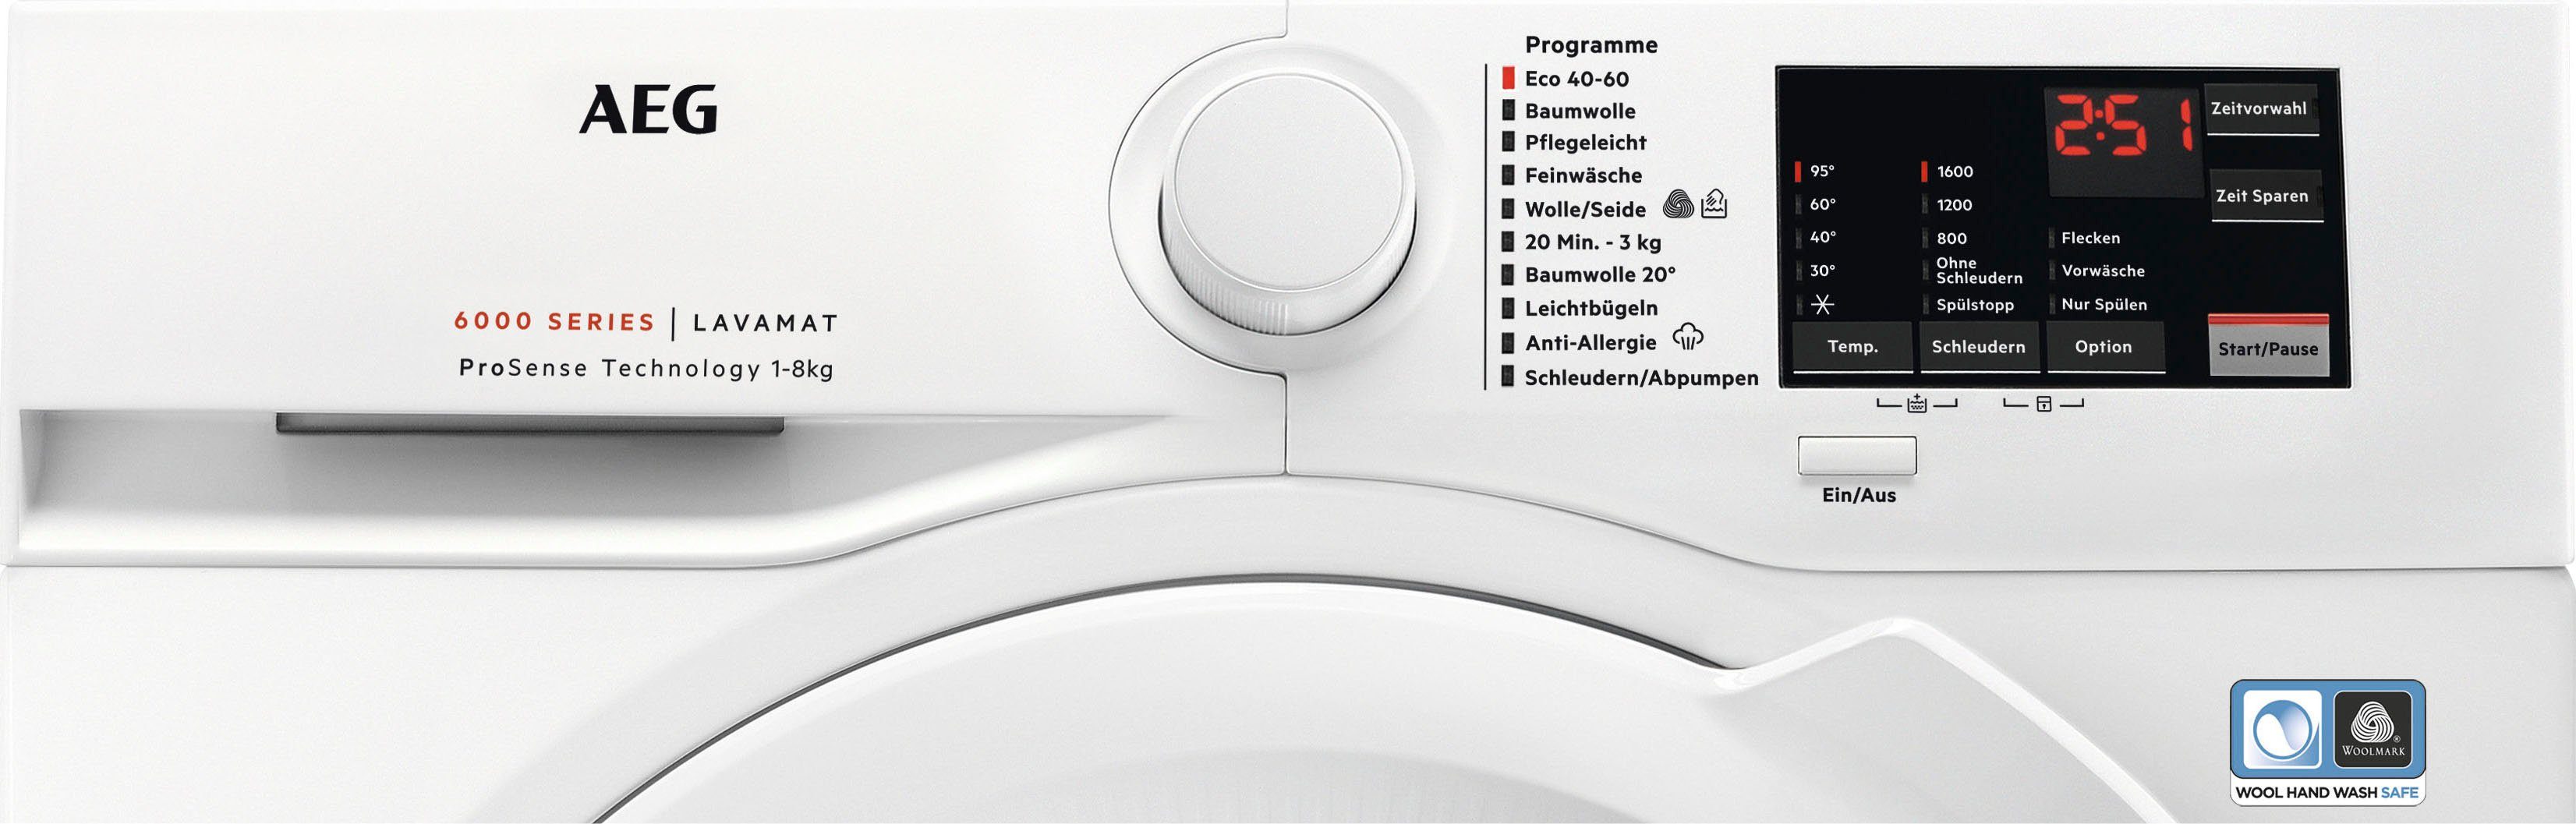 AEG Waschmaschine Serie 6000 kg, mit Anti-Allergie ProSense-Technologie 1600 Dampf Programm L6FA68FL, U/min, mit 8 Hygiene